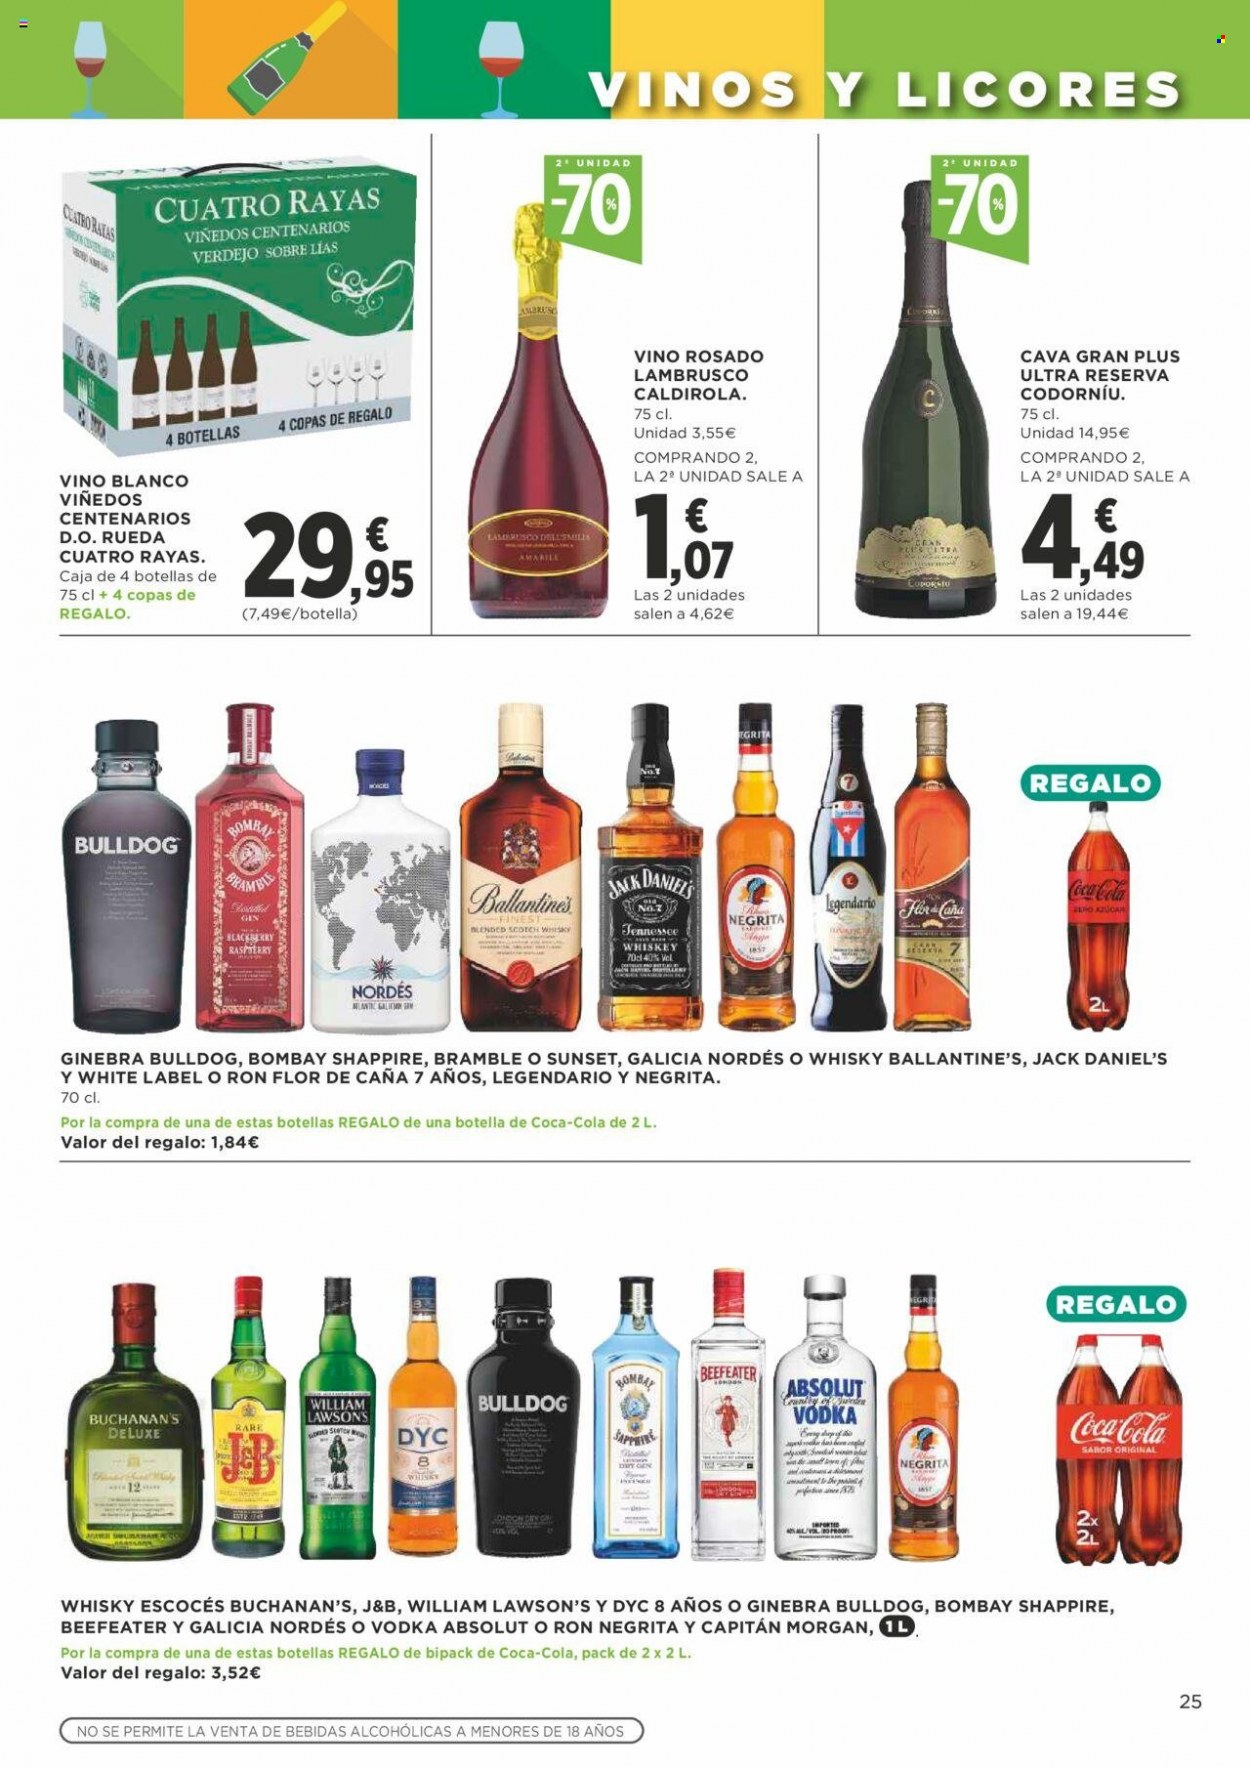 thumbnail - Folleto actual Supercor supermercados - 30/06/22 - 13/07/22 - Ventas - Coca-cola, vino, Cava, Lambrusco, Verdejo, vino blanco, vino rosado, ron, Absolut, Ballantine's, Beefeater, Bulldog, DYC, Flor de Caña, gin, J&B, Jack Daniel’s, vodka, whisky, Scotch Whisky, Legendario, Negrita, copa. Página 25.